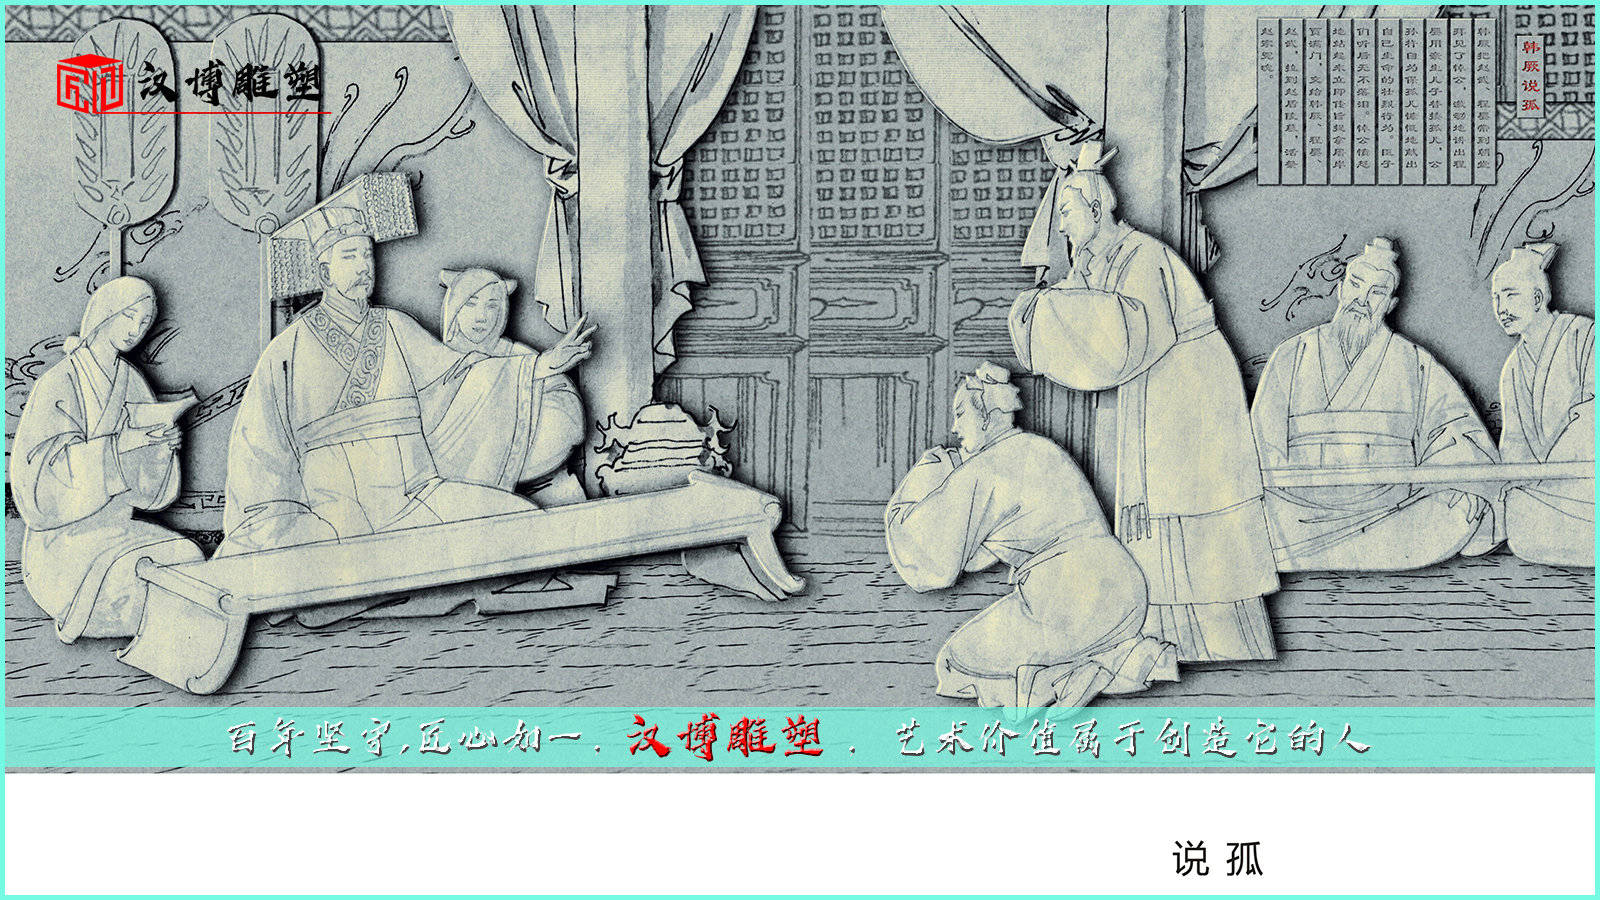 j9九游真人游戏第一品牌_
浏览赵氏孤儿雕塑 相识历史故事(图2)